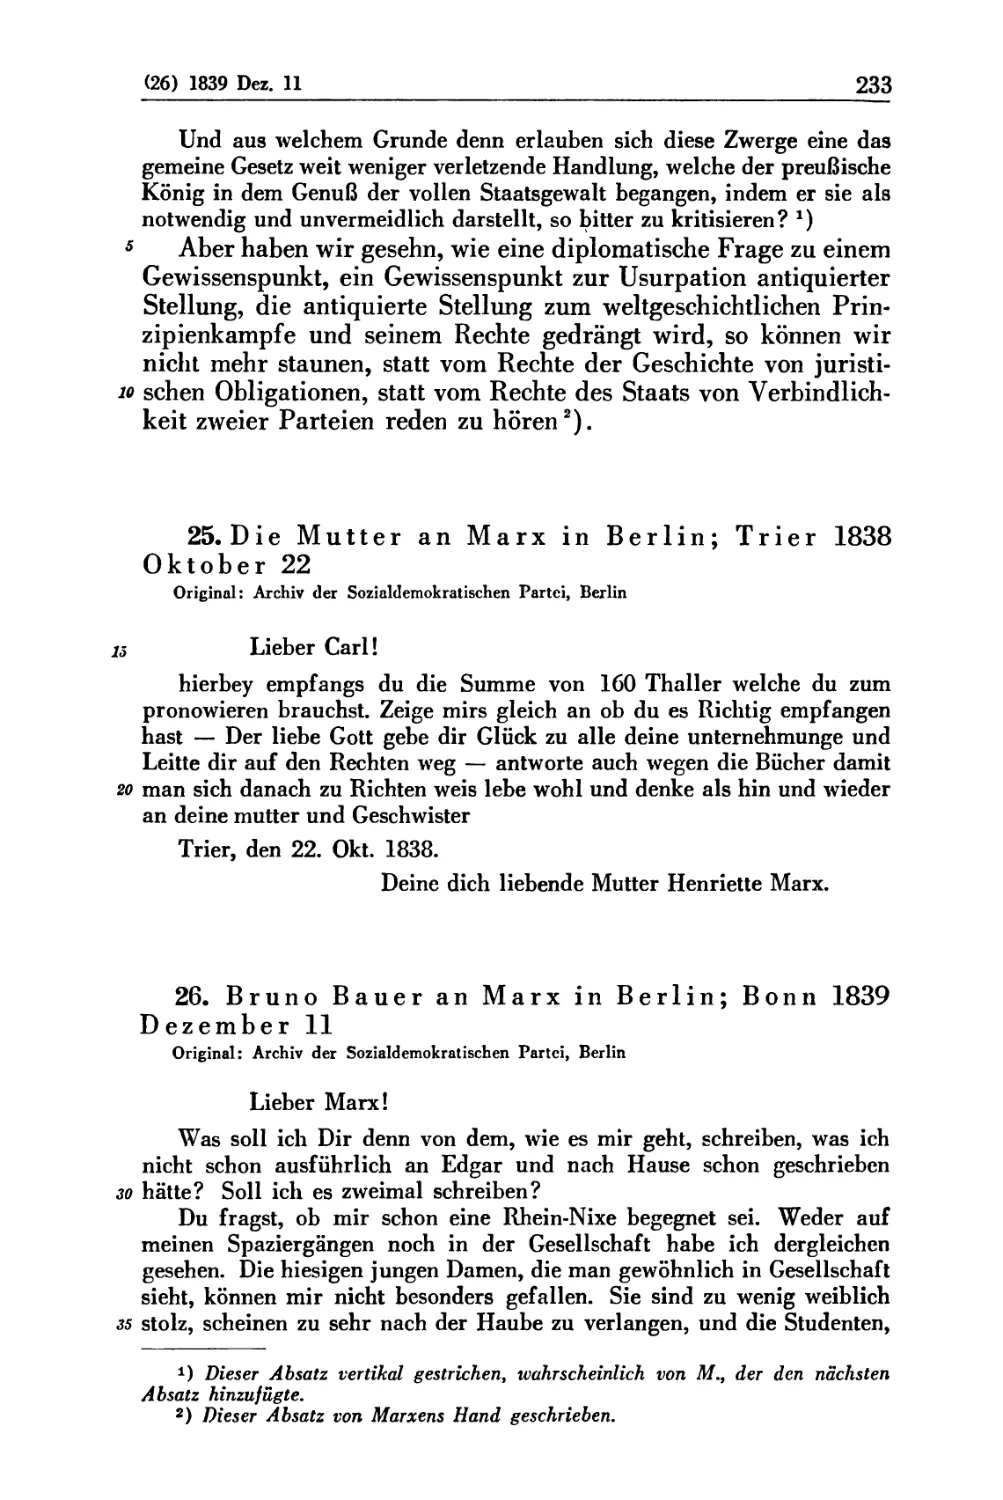 25. Die Mutter an Marx in Berlin; Trier 1838 Oktober 22
26. Bruno Bauer an Marx in Berlin; Bonn 1839 Dezember 11